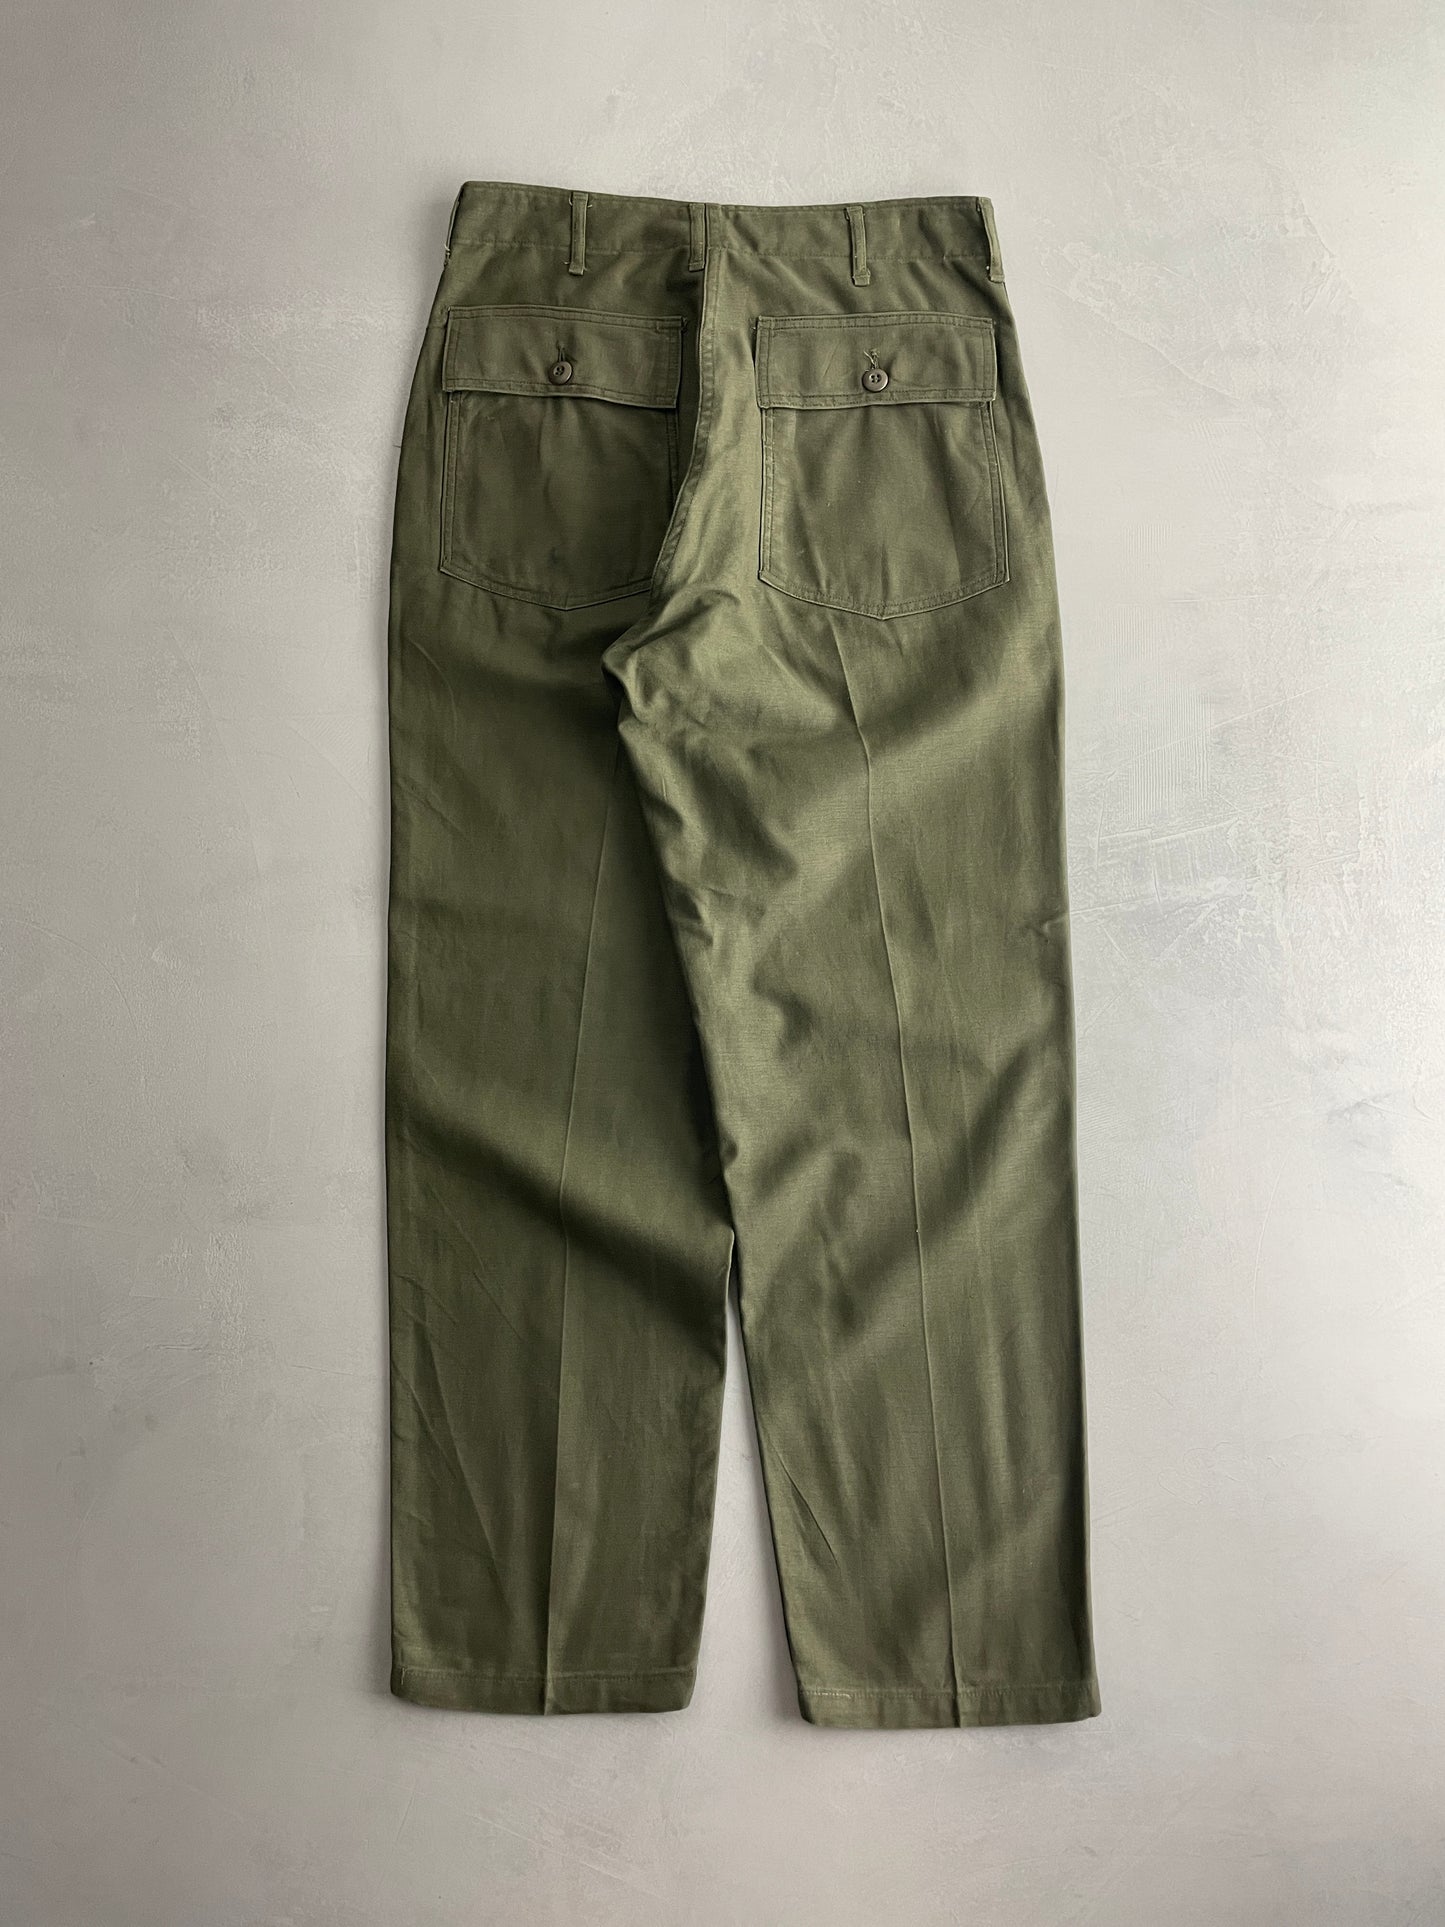 OG-107 US Army Pants [34"]